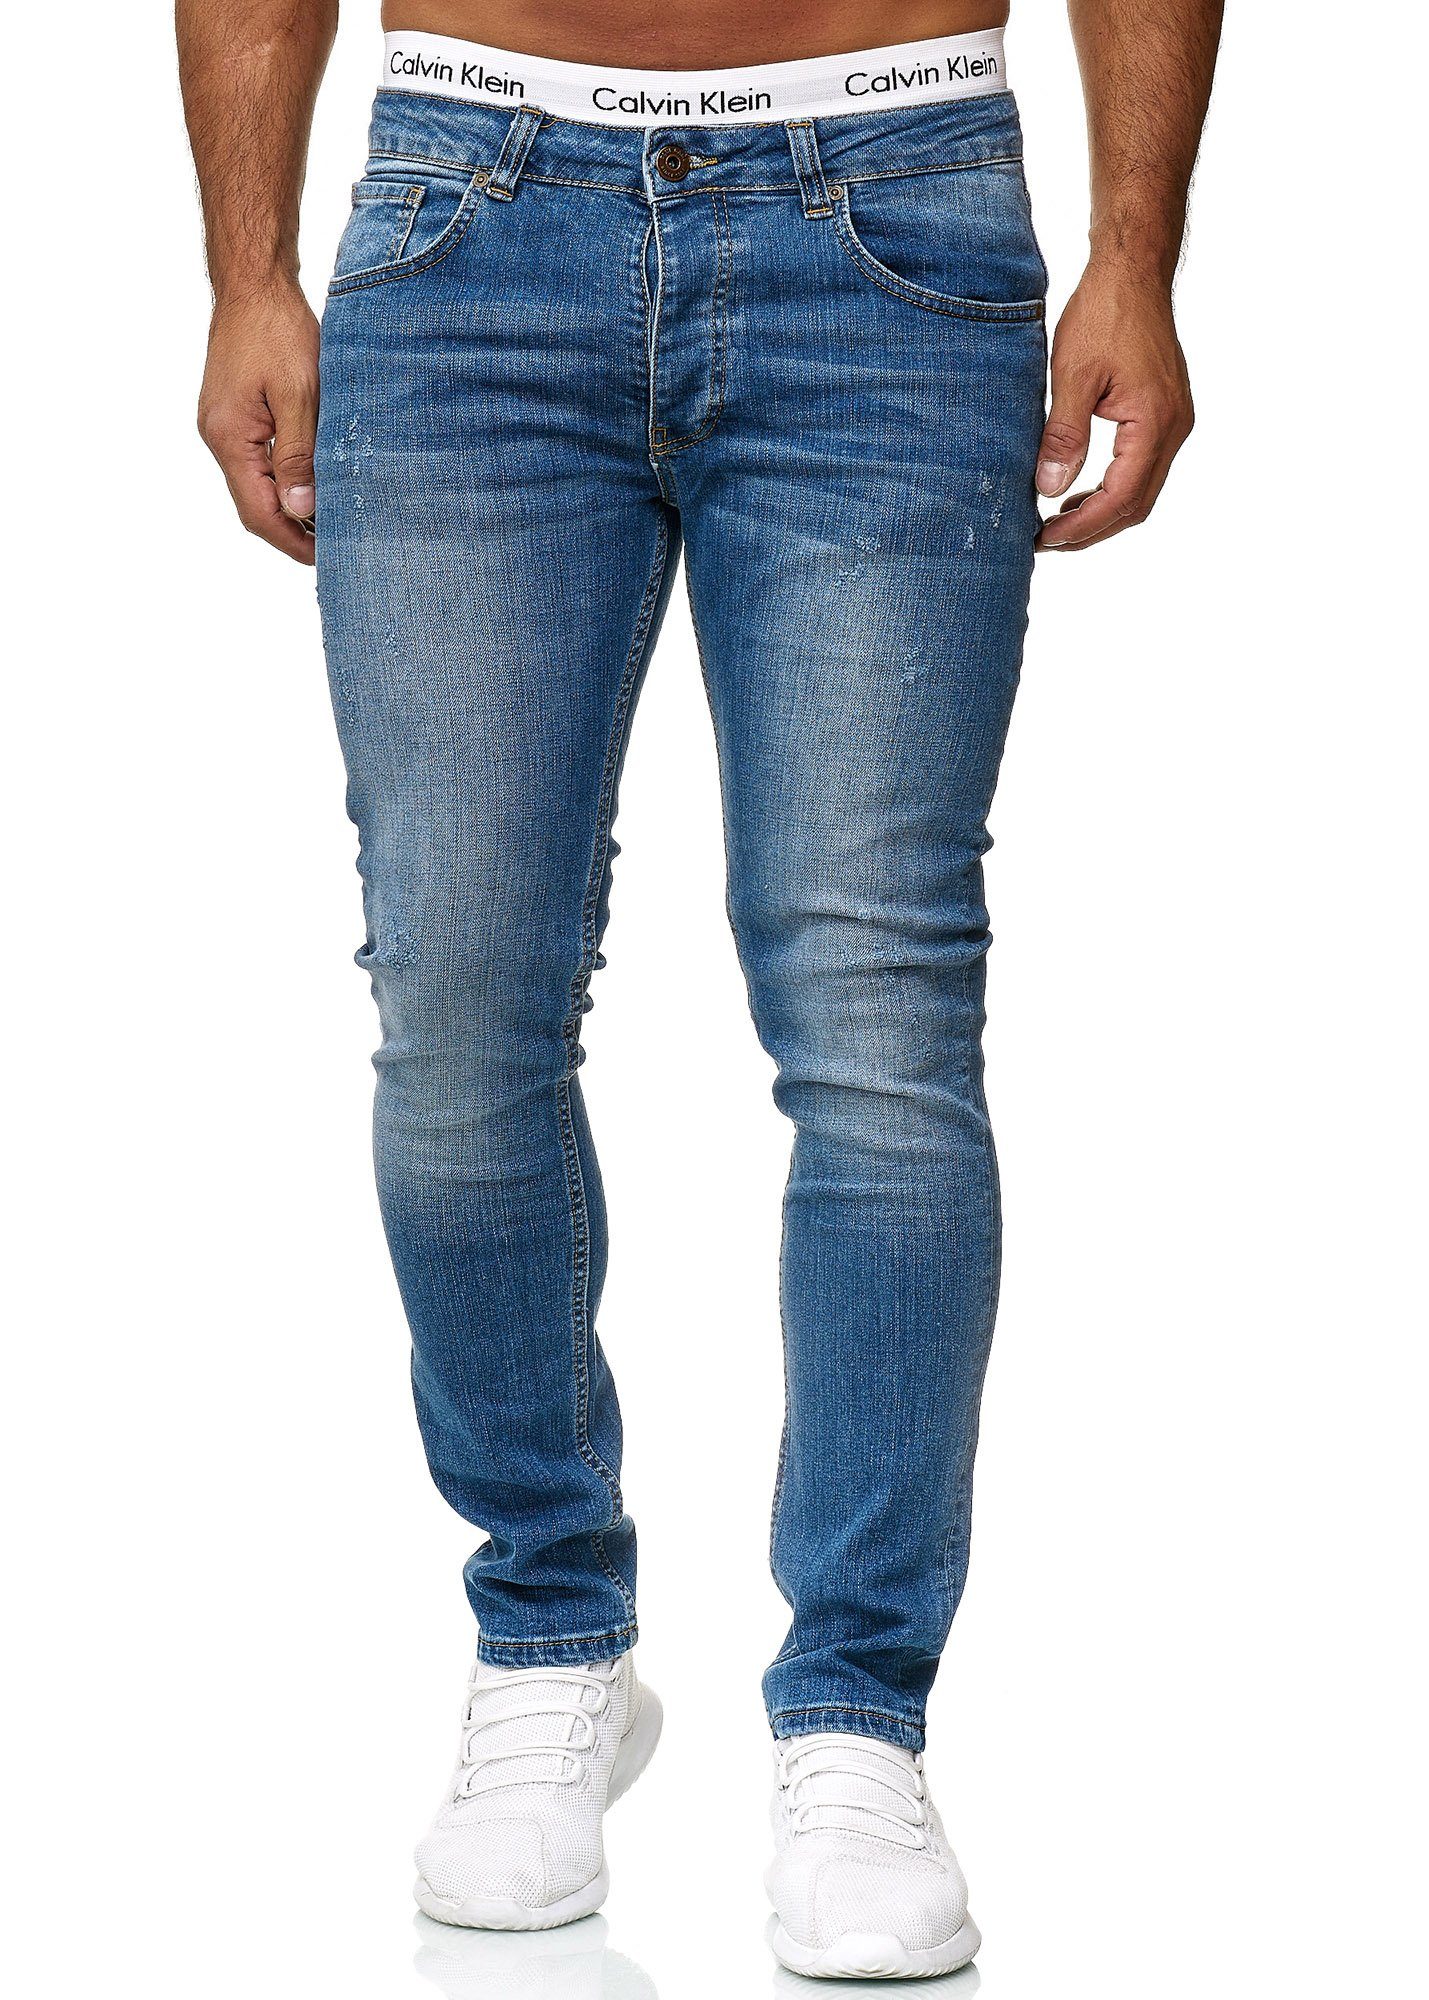 Designer Basic Hose Regular Used Skinny Blue Jeans Jeanshose Herren Code47 Skinny-fit-Jeans Fit Old Code47 601